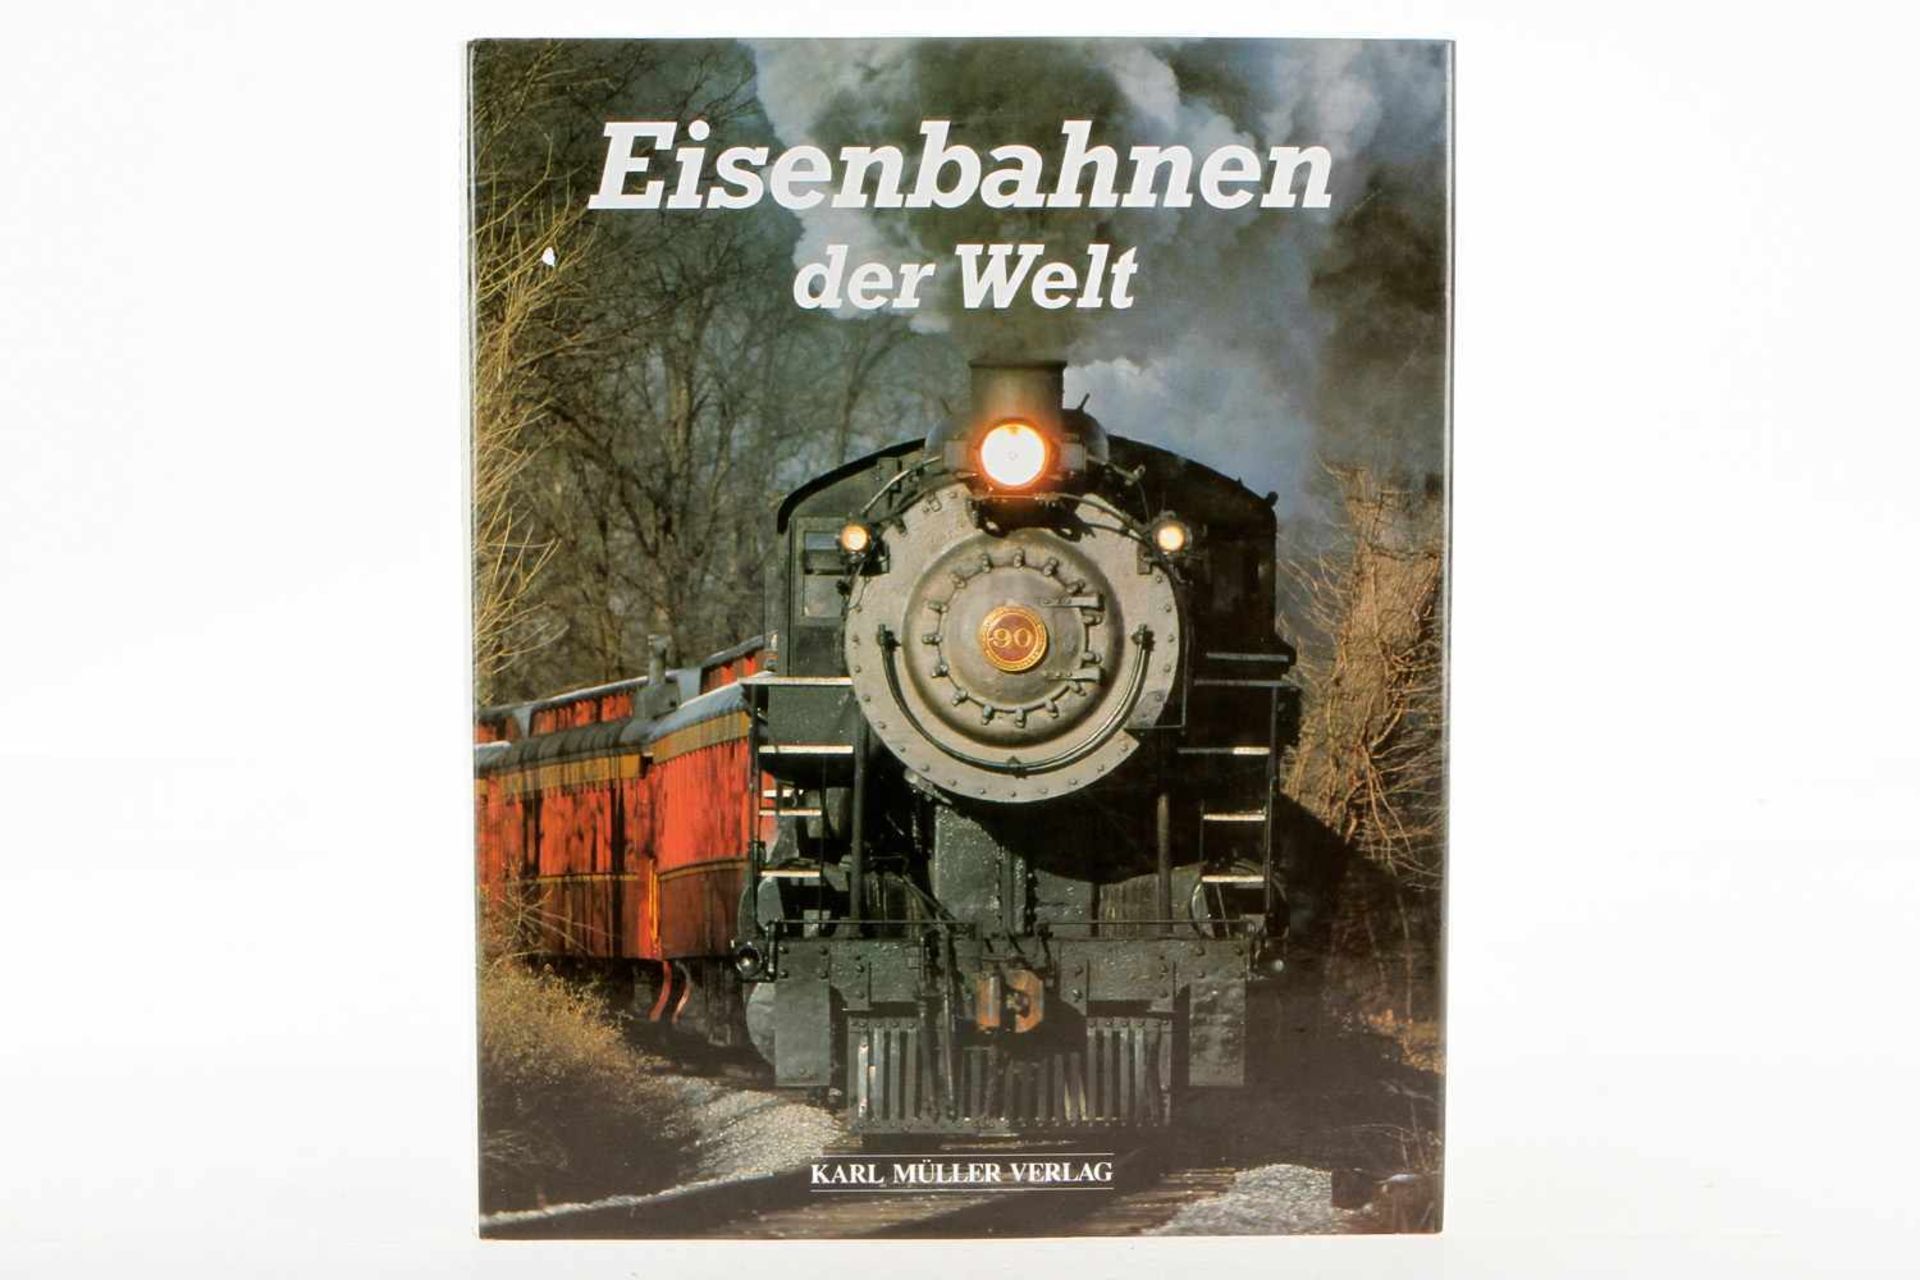 Buch "Eisenbahnen der Welt", 1990, 144 Seiten, Alterungsspuren